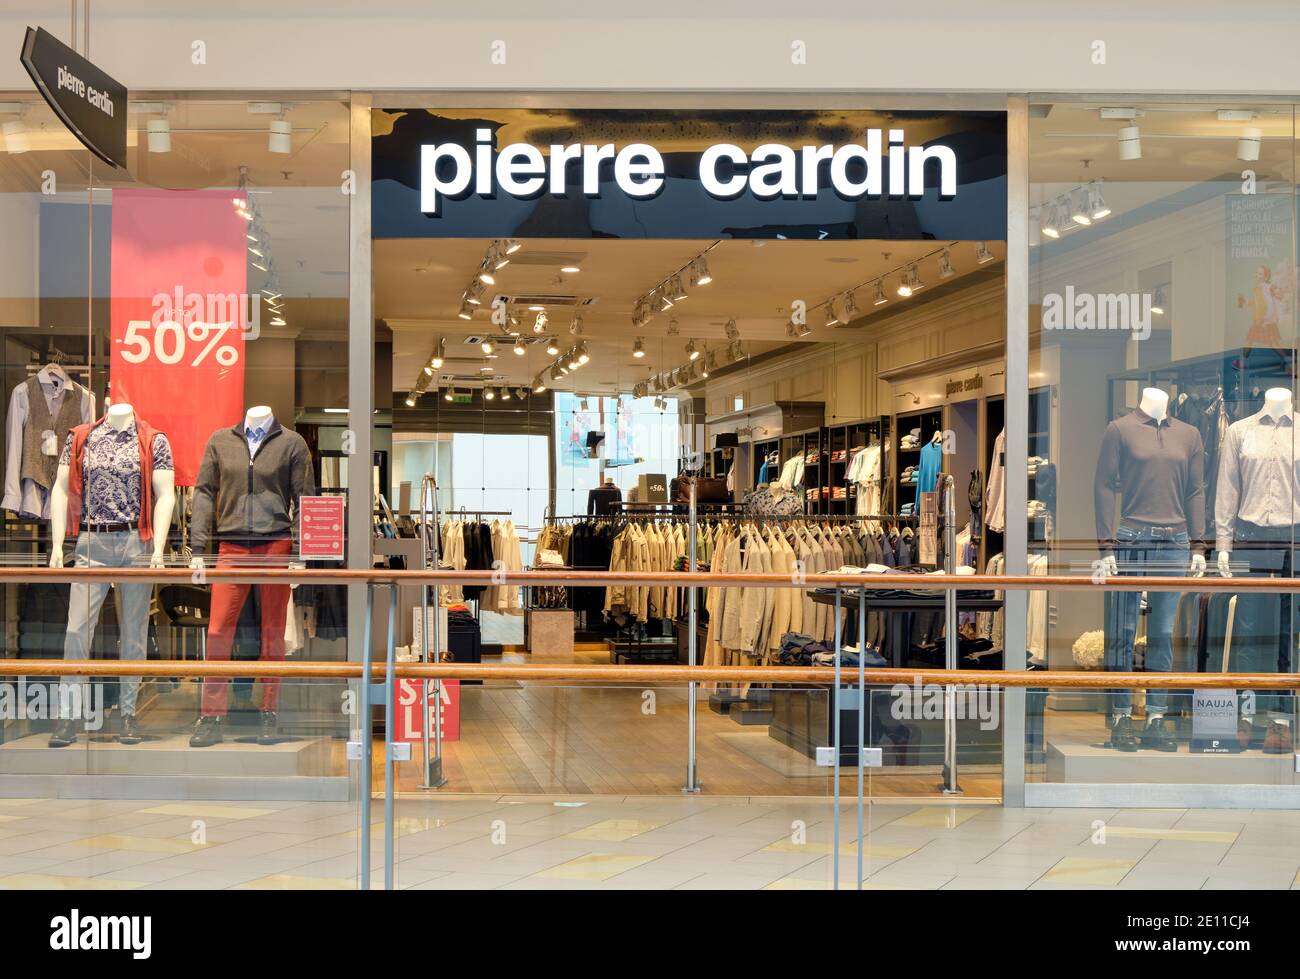 Pierre Cardin Luxus Mode Shop Eingang mit Marke Beschilderung  Stockfotografie - Alamy